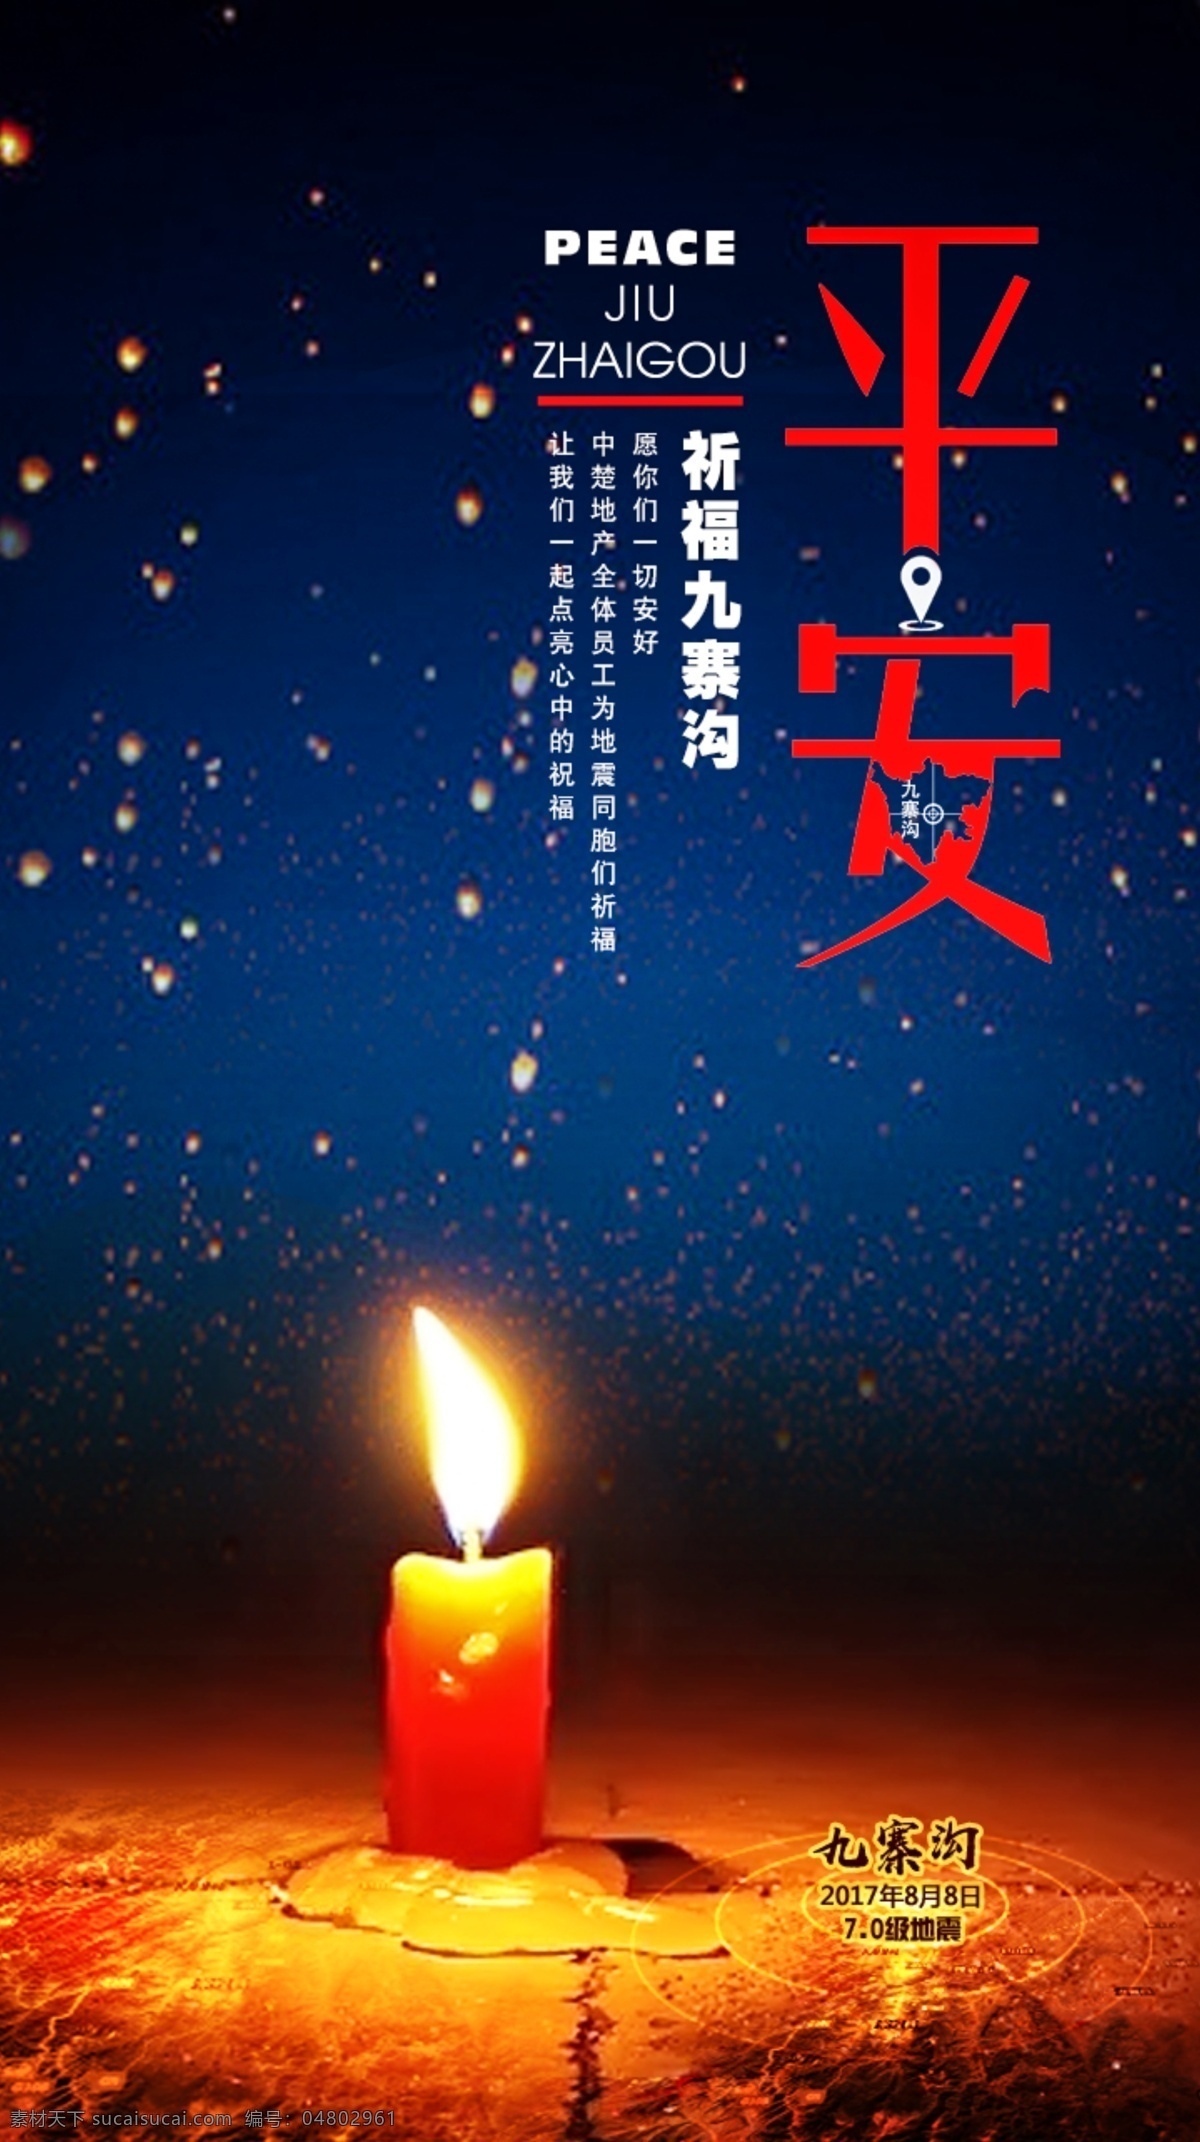 九寨沟 地震 祈福 公益 创意 海报 2017 年 月 日 平安 祈福九寨沟 蜡烛 祝福